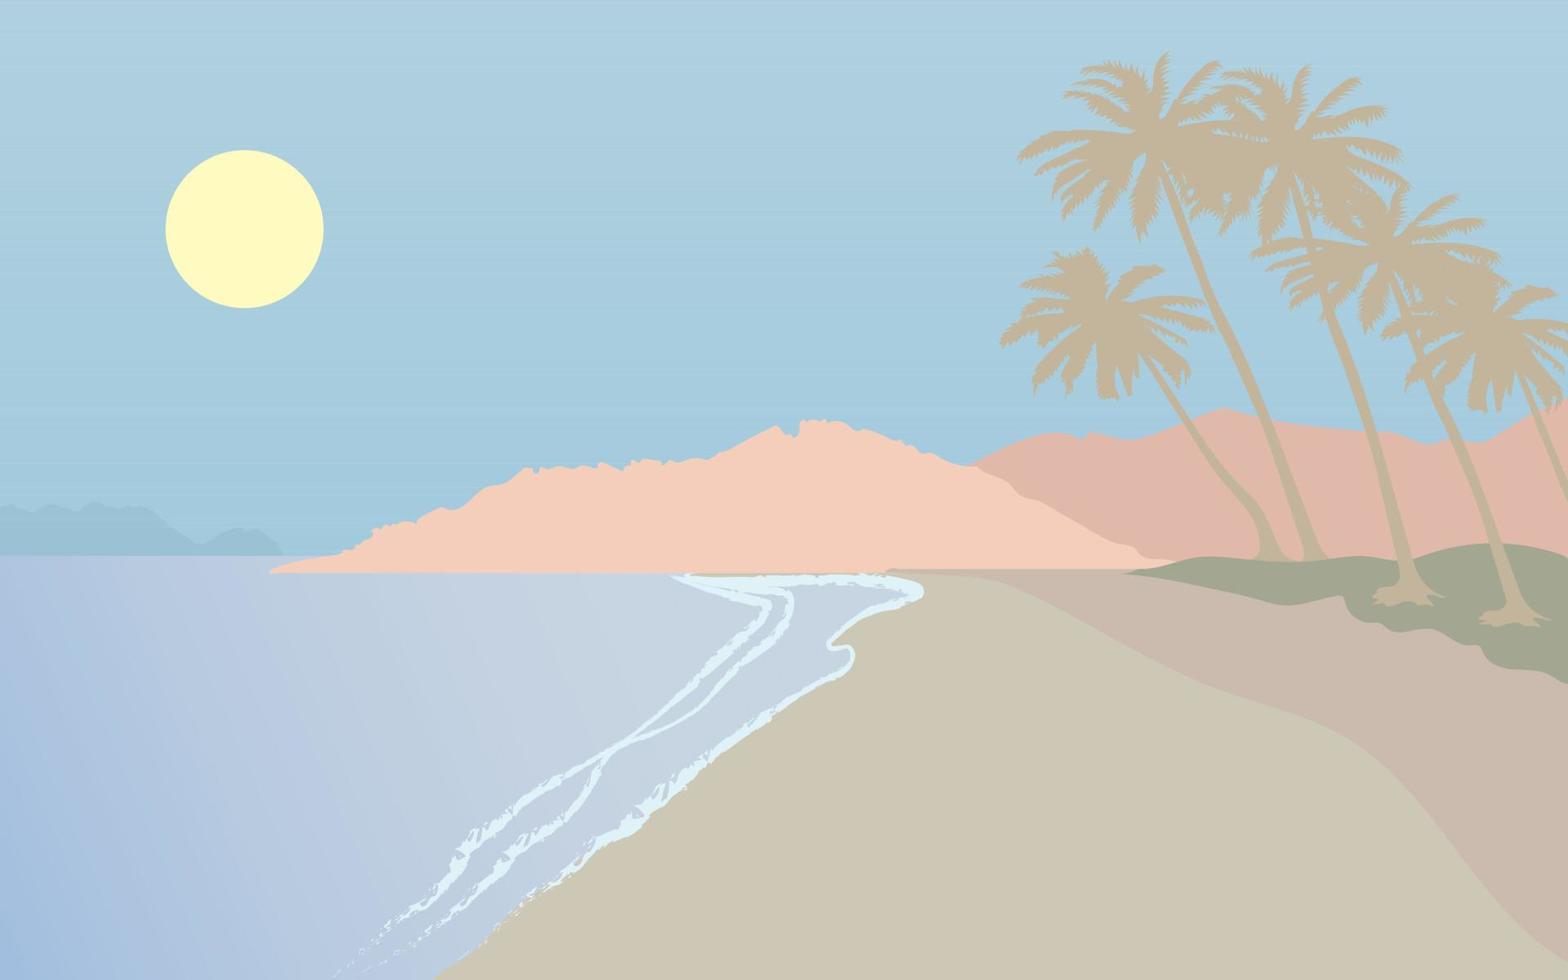 illustration vectorielle de mer, plage de sable et montagnes, tons pastel. vecteur